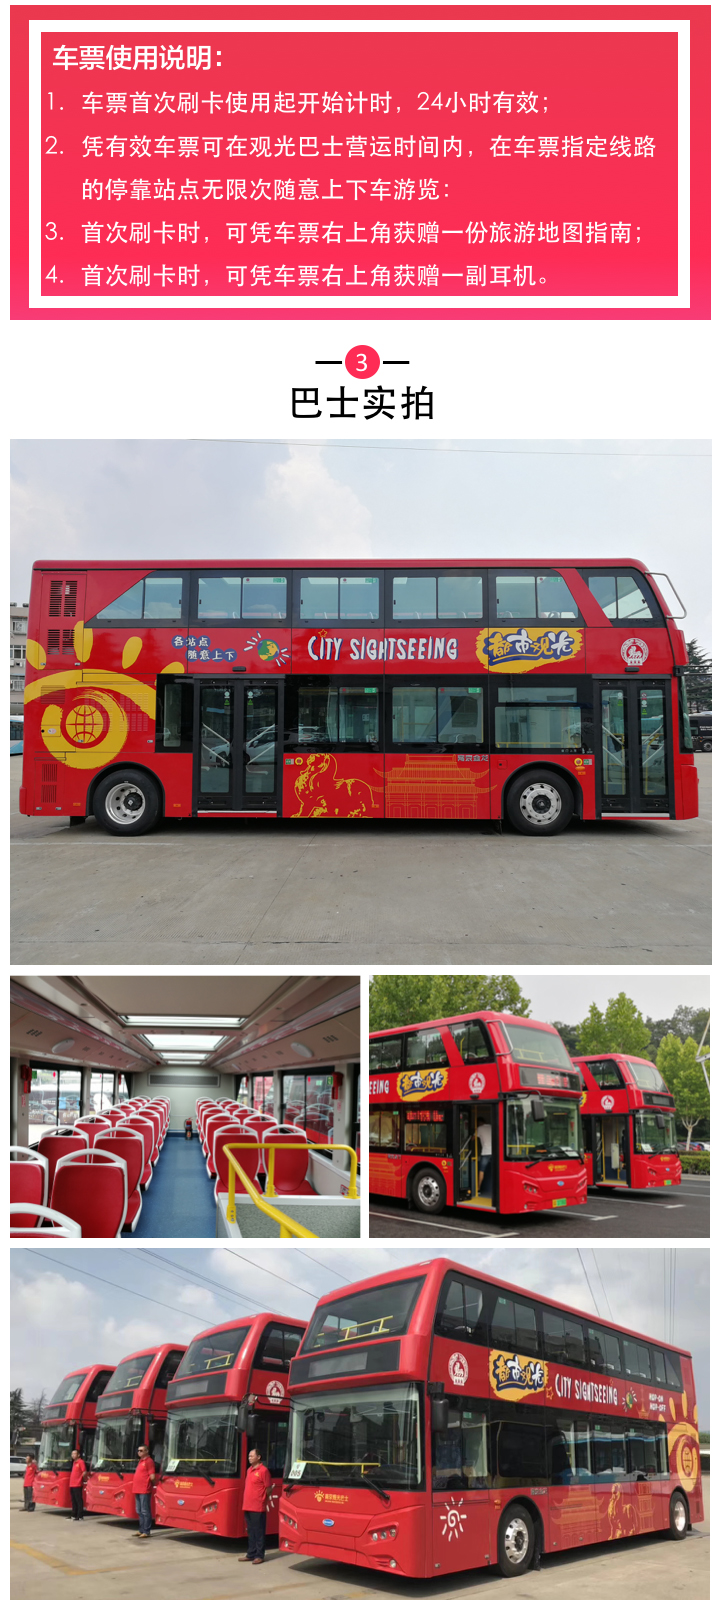 南京都市双层观光巴士一日票激活后24小时内有效短信上车任意乘坐